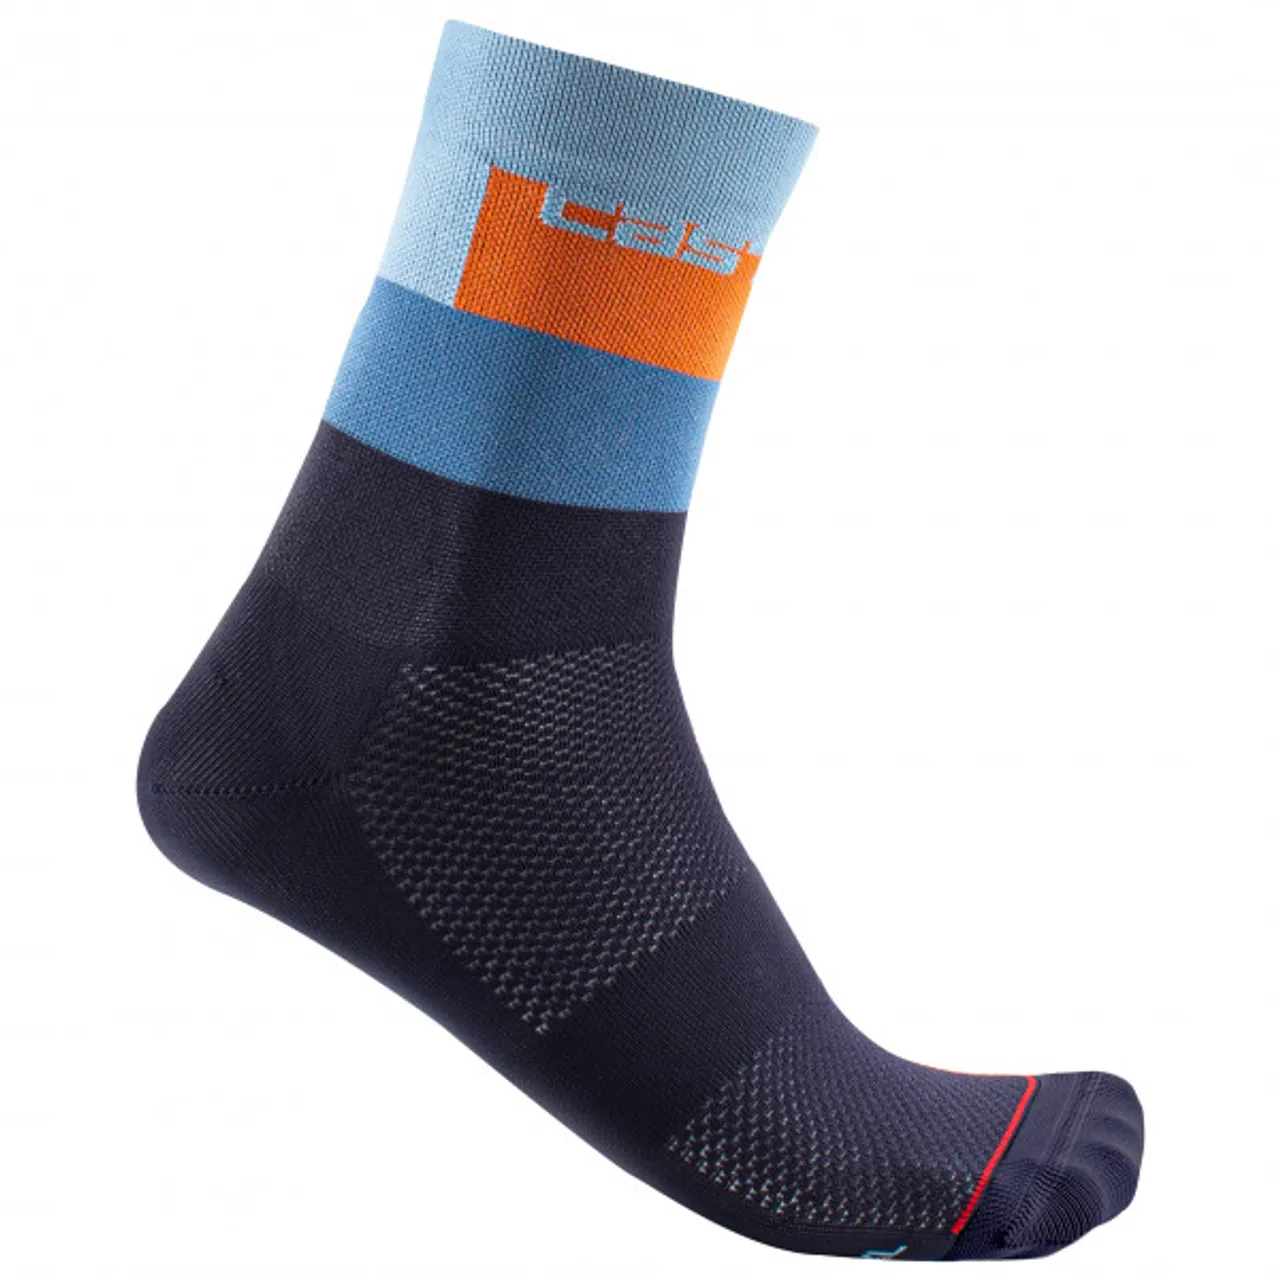 Castelli - Blocco 15 - Cycling socks